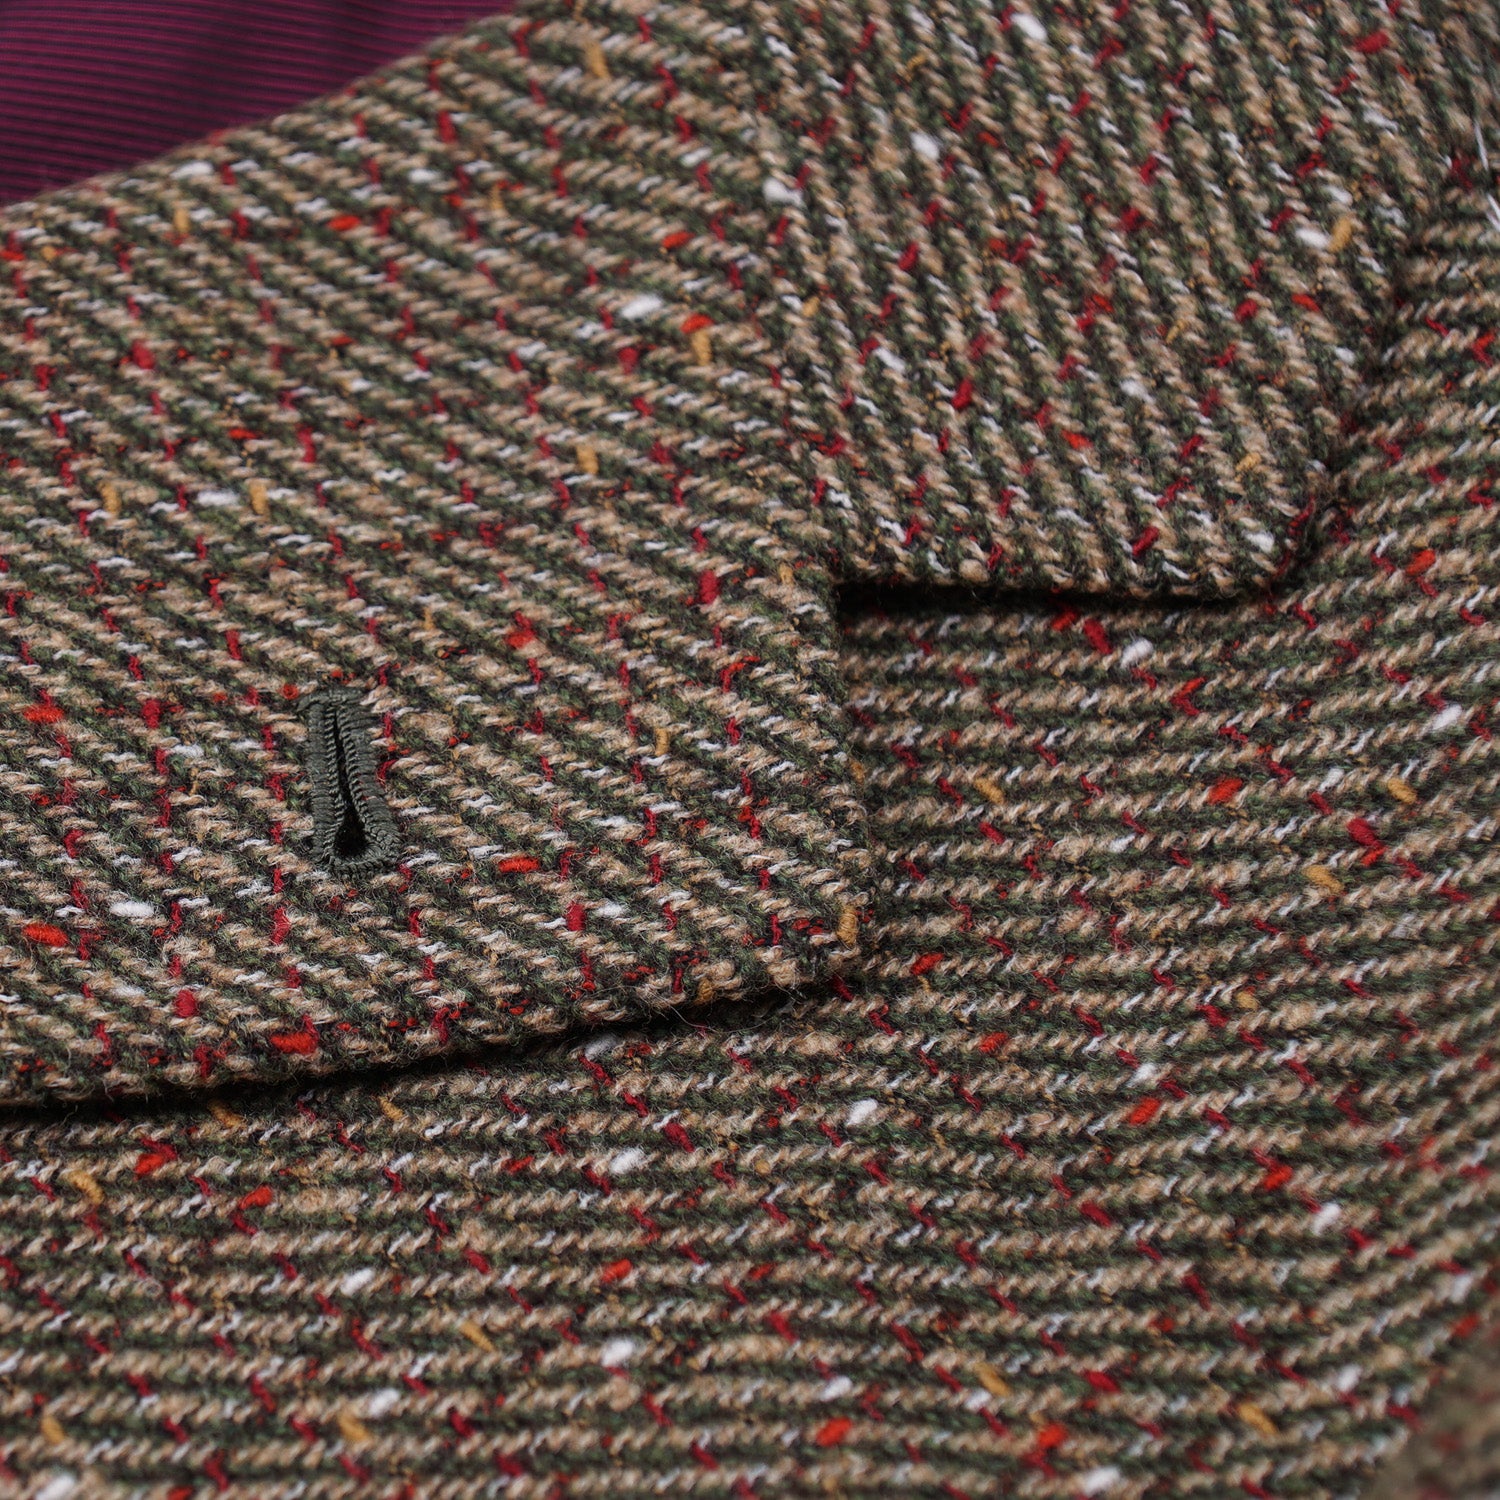 Orazio Luciano Patterned Tweed Wool Sport Coat - Top Shelf Apparel